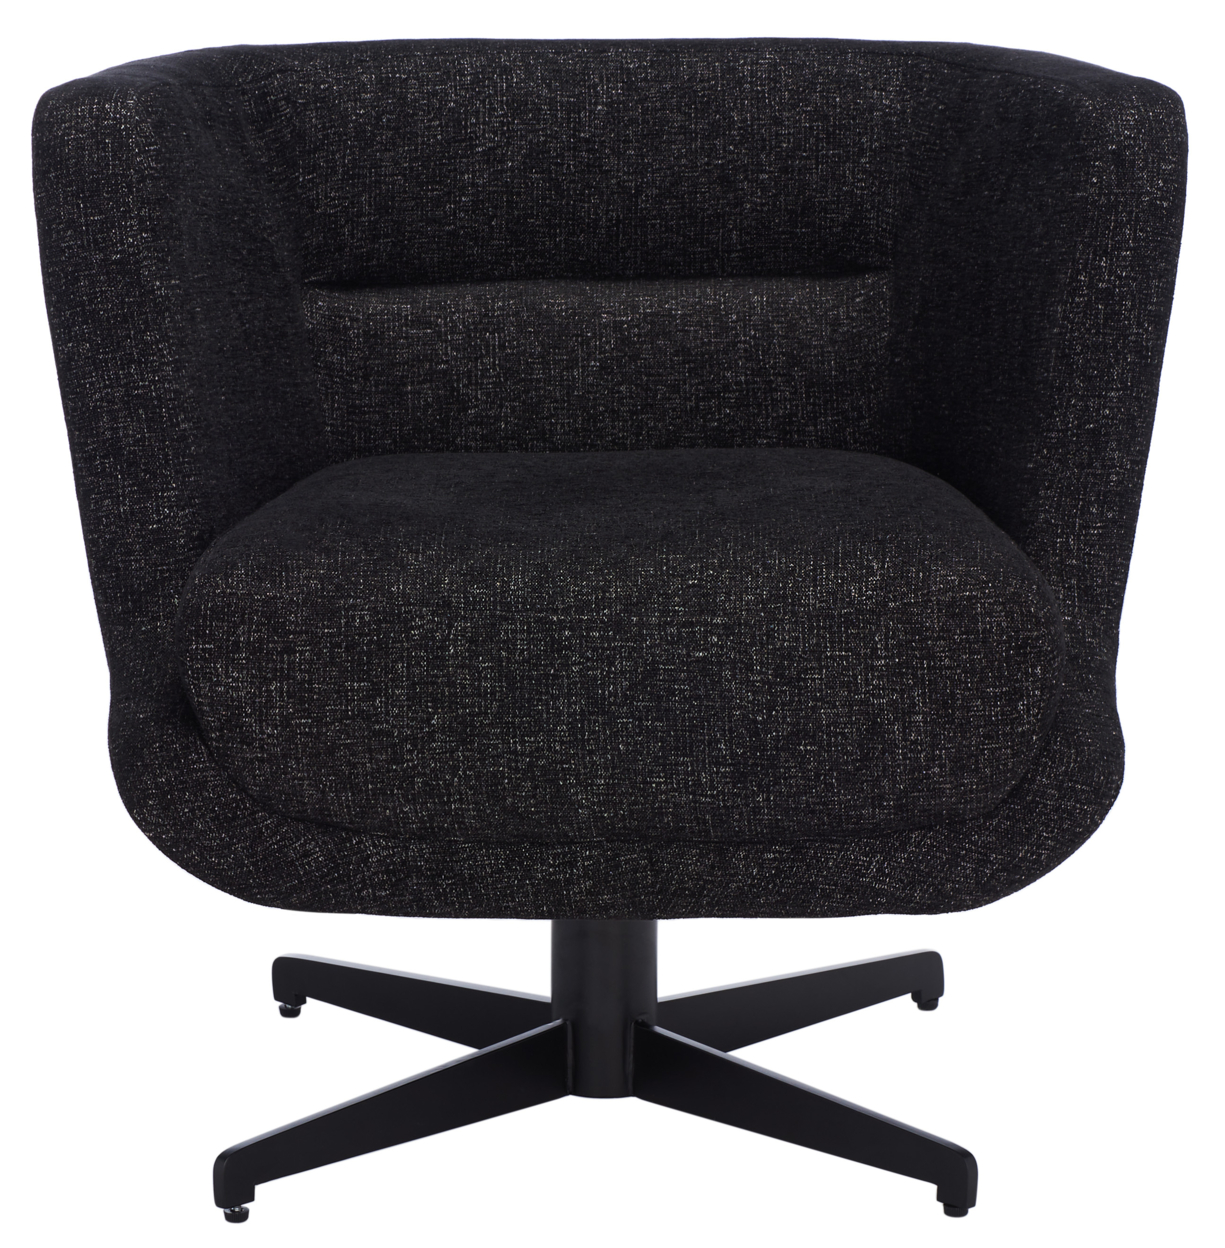 SAFAVIEH Wexler Accent Chair Black